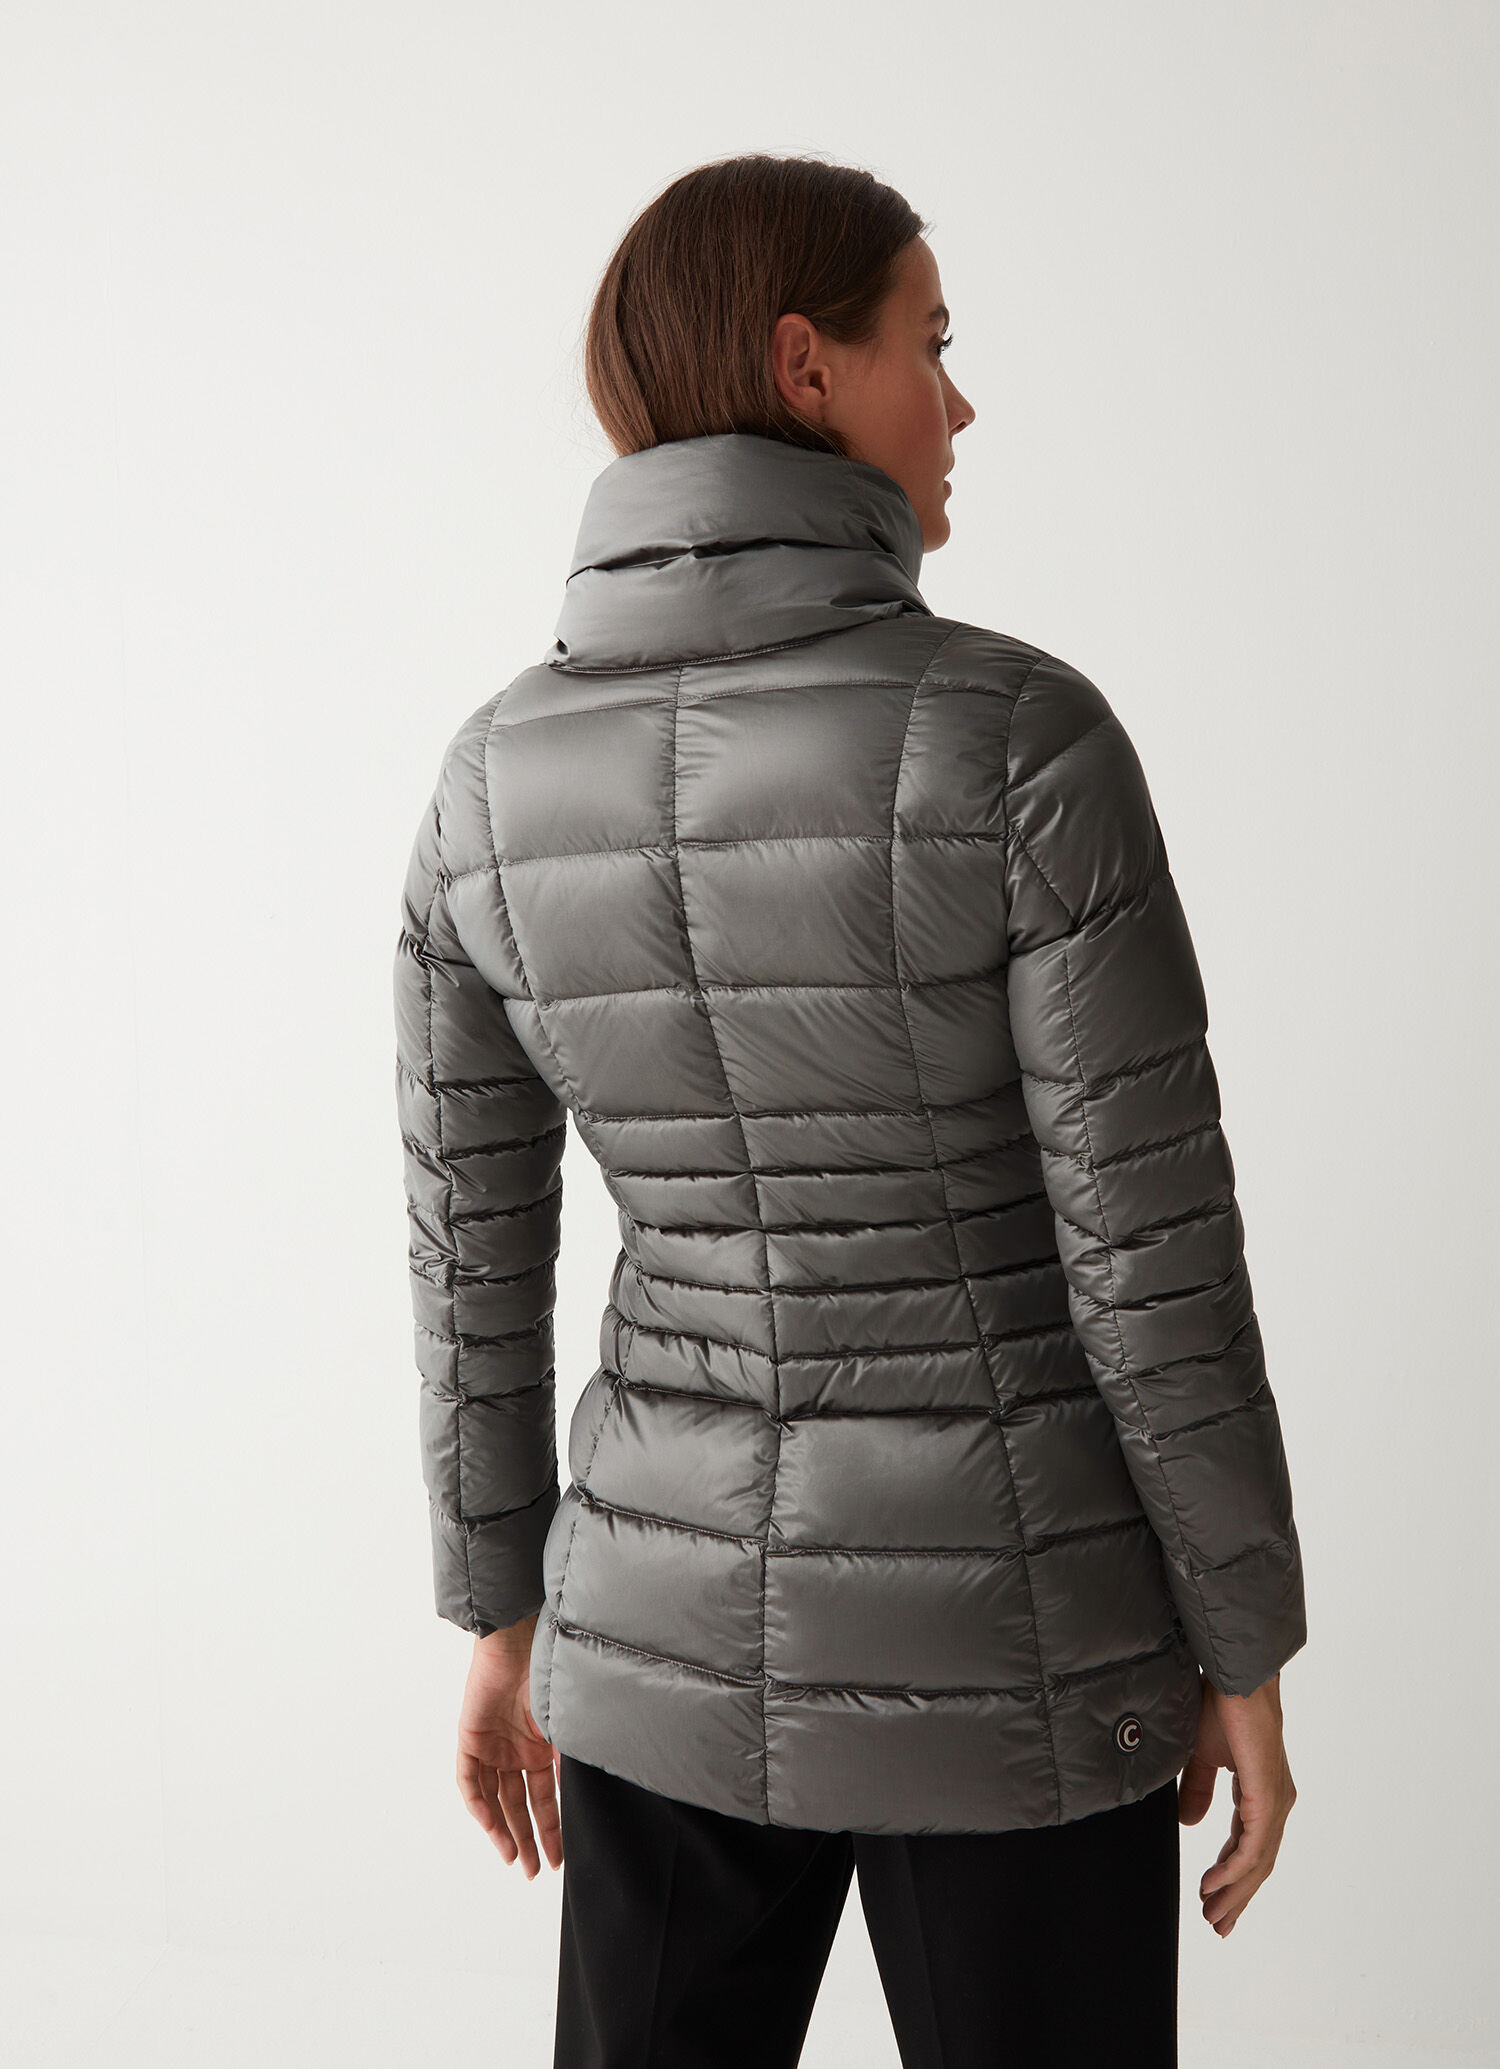 Piumino invernale Colmar nero Donna Vestiti Cappotti e giacche Giacche Piumini COLMAR Piumini 